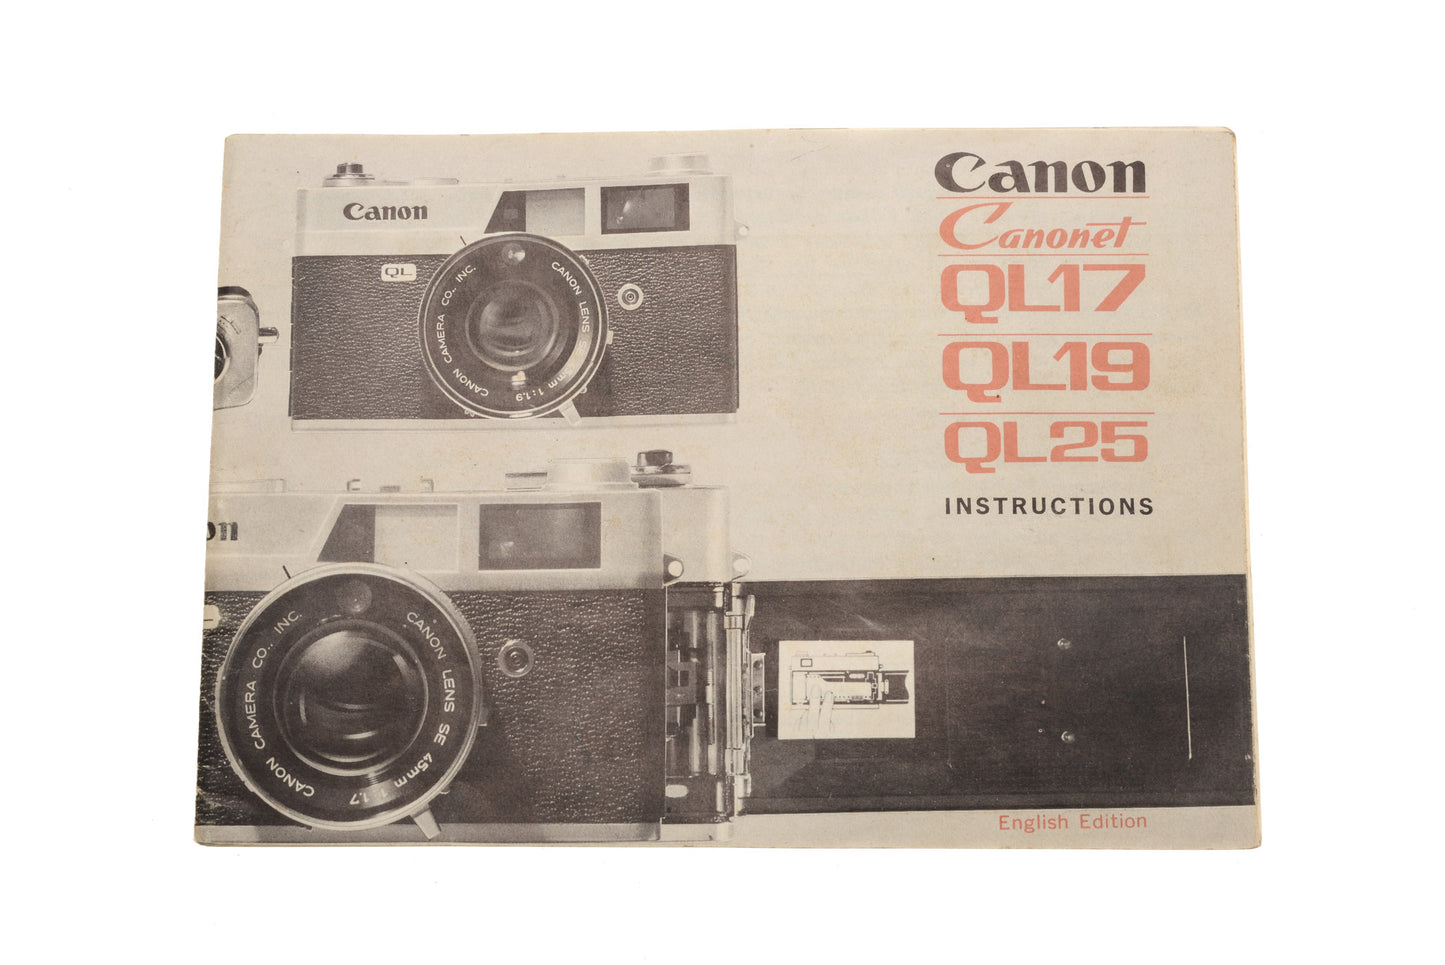 Canon Canonet QL17/QL19/QL25 Instructions - Accessory